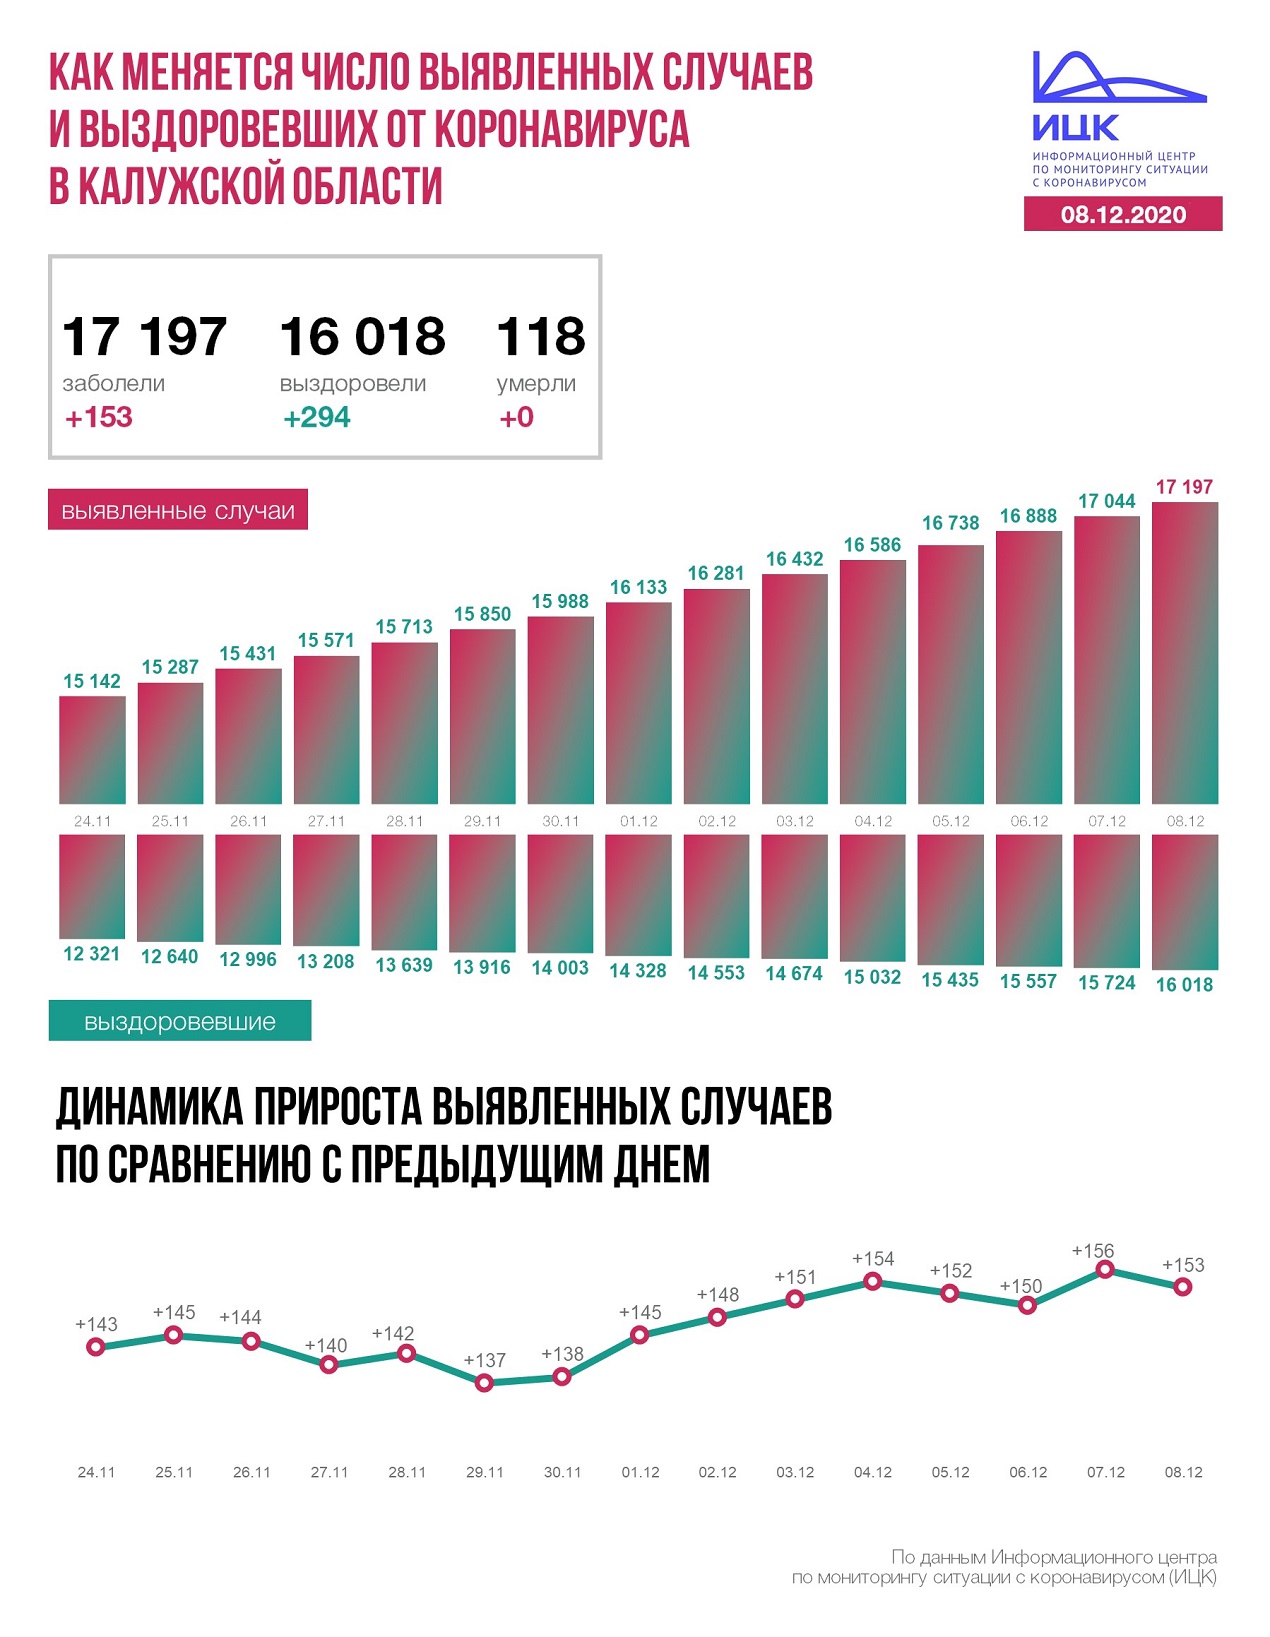 Официальная статистика по коронавирусу в Калужской области на 8 декабря 2020 года.